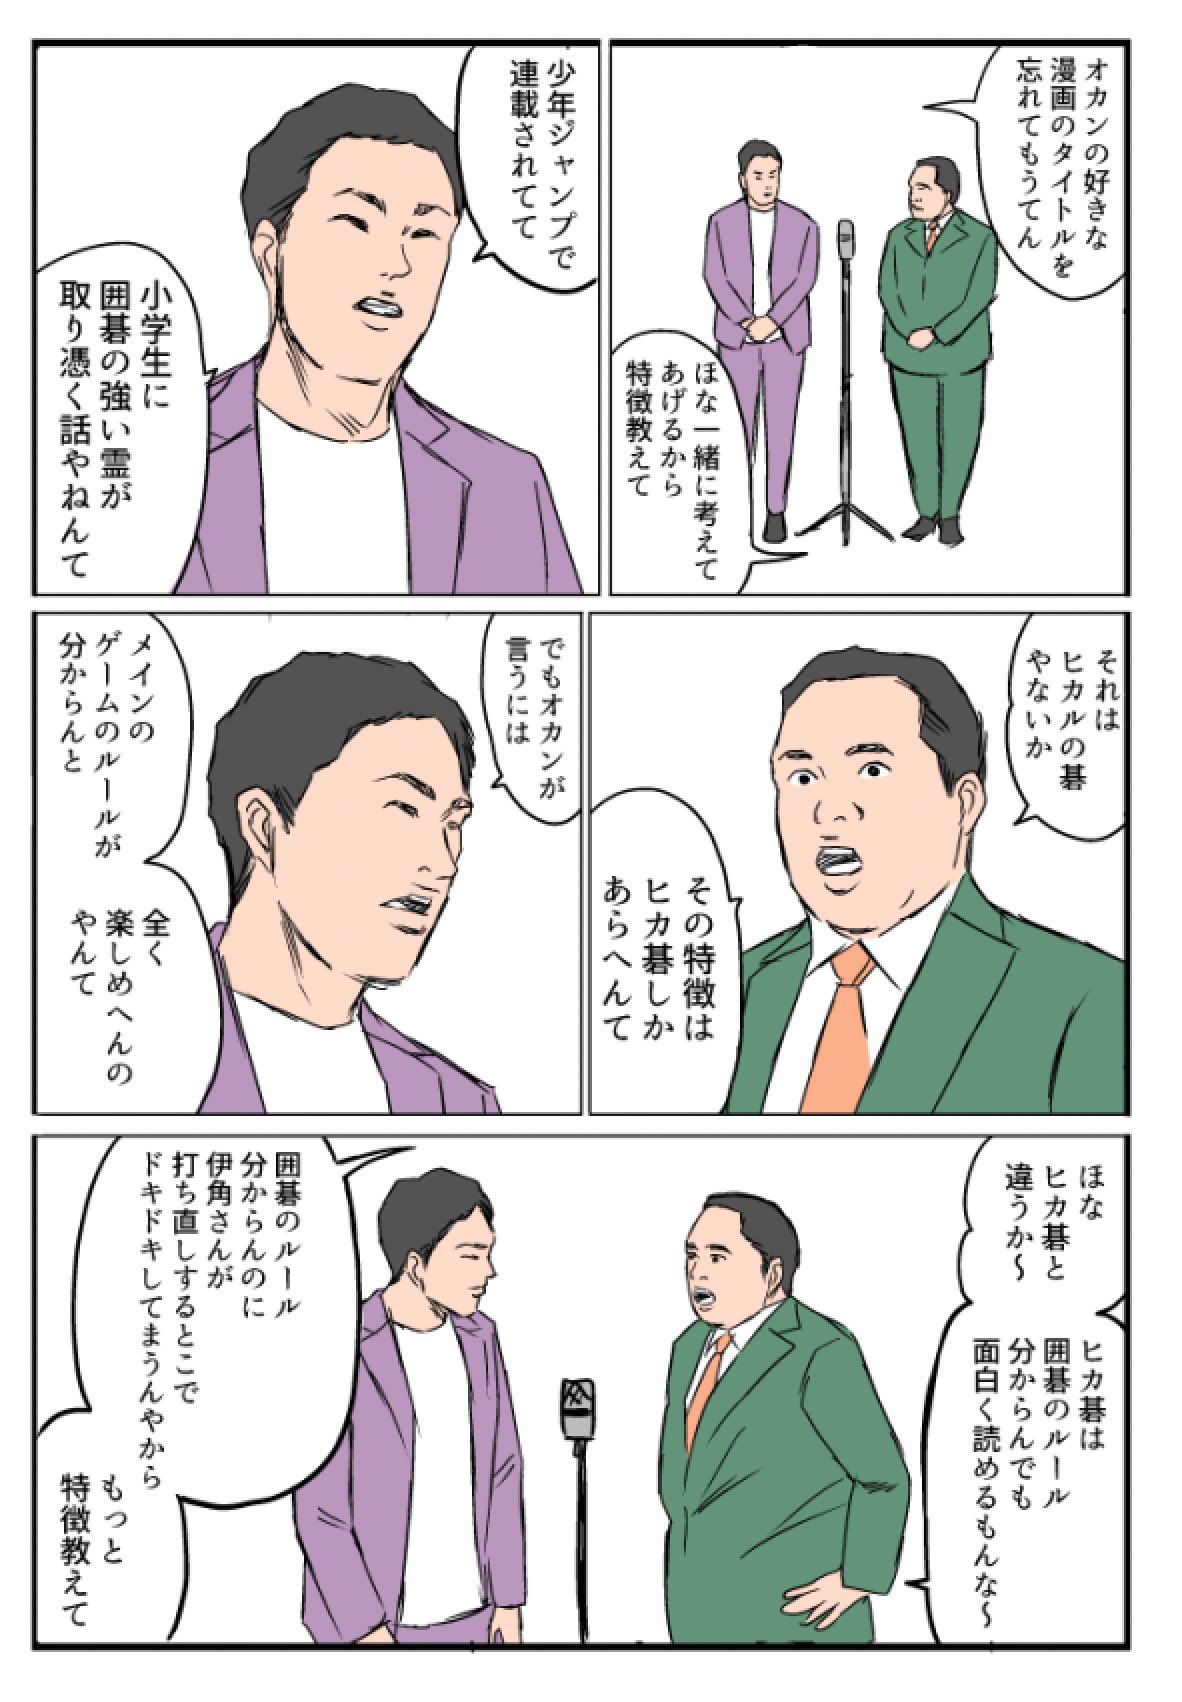 杉野アキユキ 将棋漫画kindleで発売中 ヒカルの碁が好きなミルクボーイ T Co Fnor0sqgic Twitter